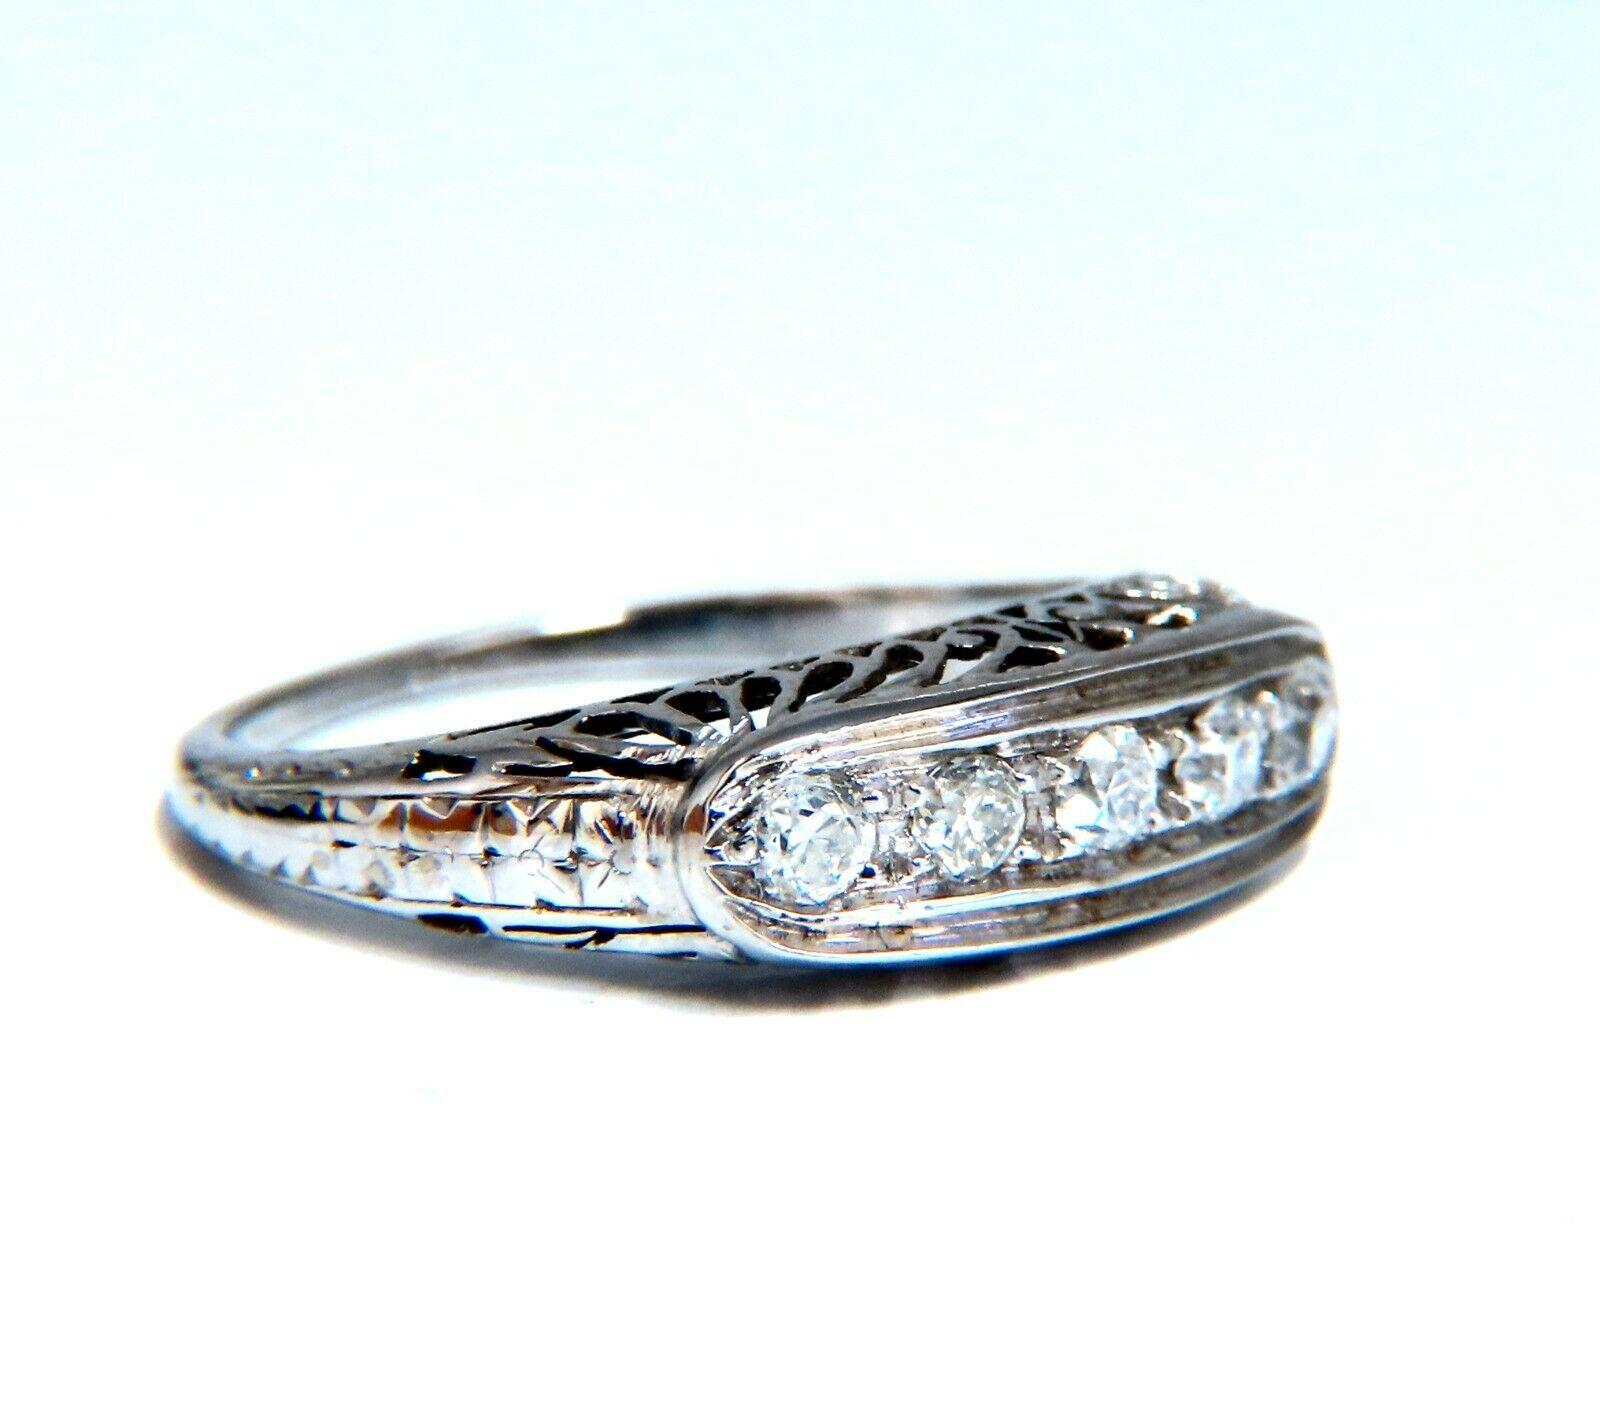 Hand Bead Set Pave Vintage Ring.

.50ct. Old Mine Natürlicher Diamant mit Rundschliff

Langlebig gebaut.

Si-1 Klarheit  Farbe G.

14kt Weißgold.

2.2 Gramm

Gesamter Ring: 5.9 mm Durchmesser

Tiefe: 4,3 mm

Aktuelle Ringgröße: 6,5

Kann die Größe